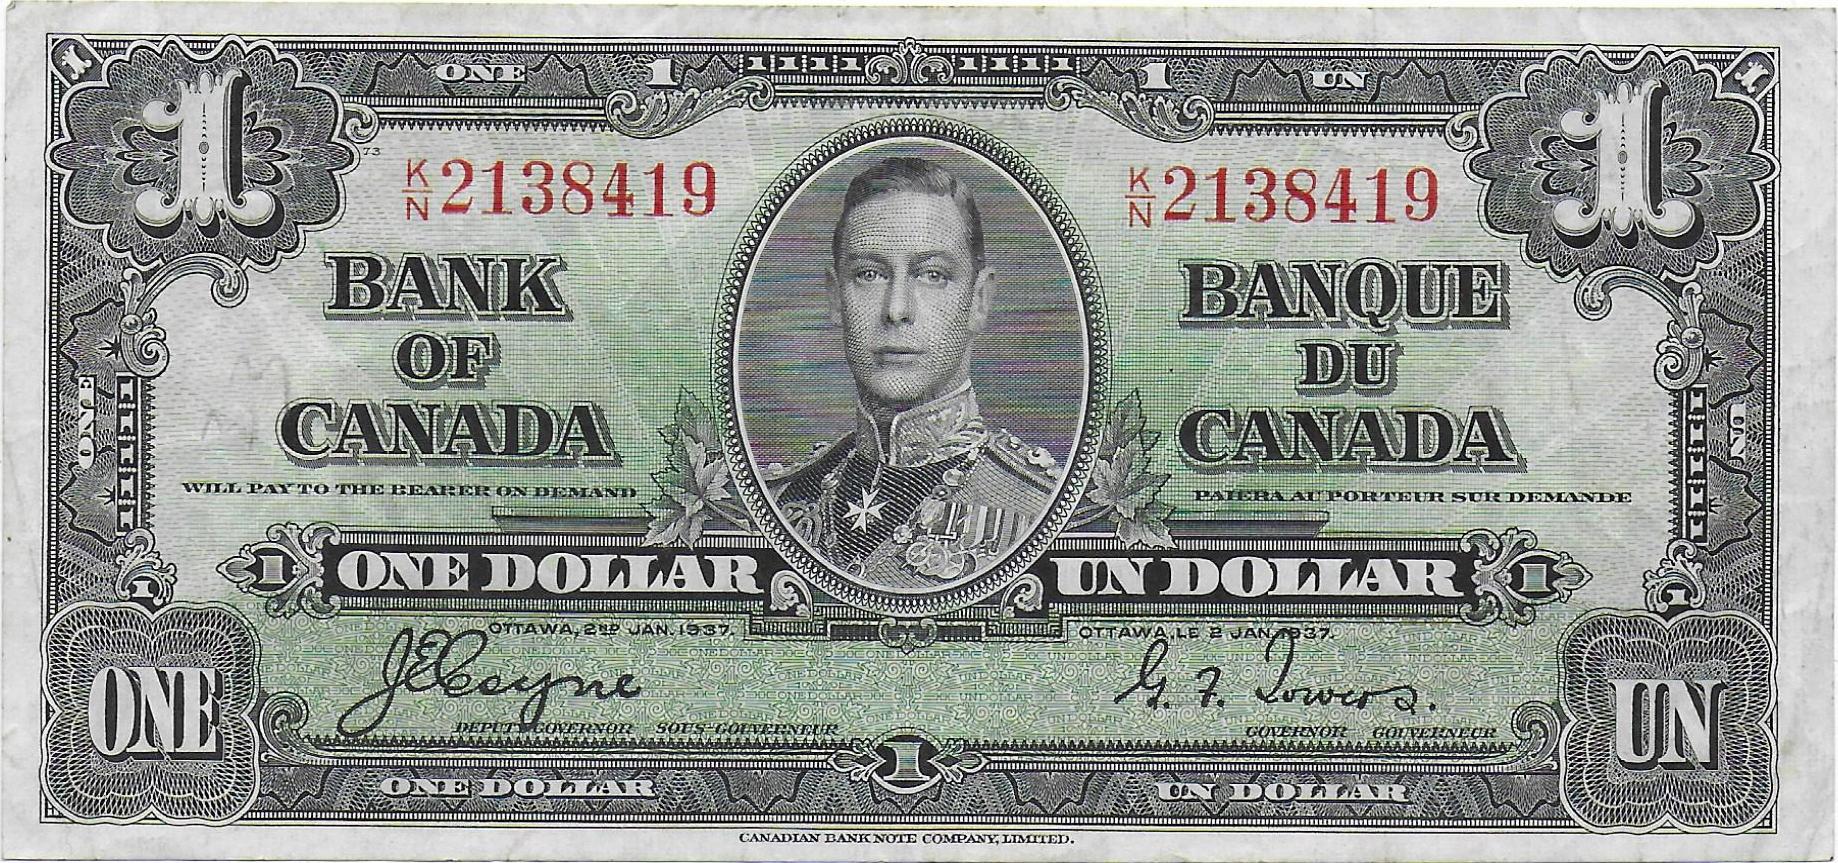 Canada One Dollar 1937 front.jpg